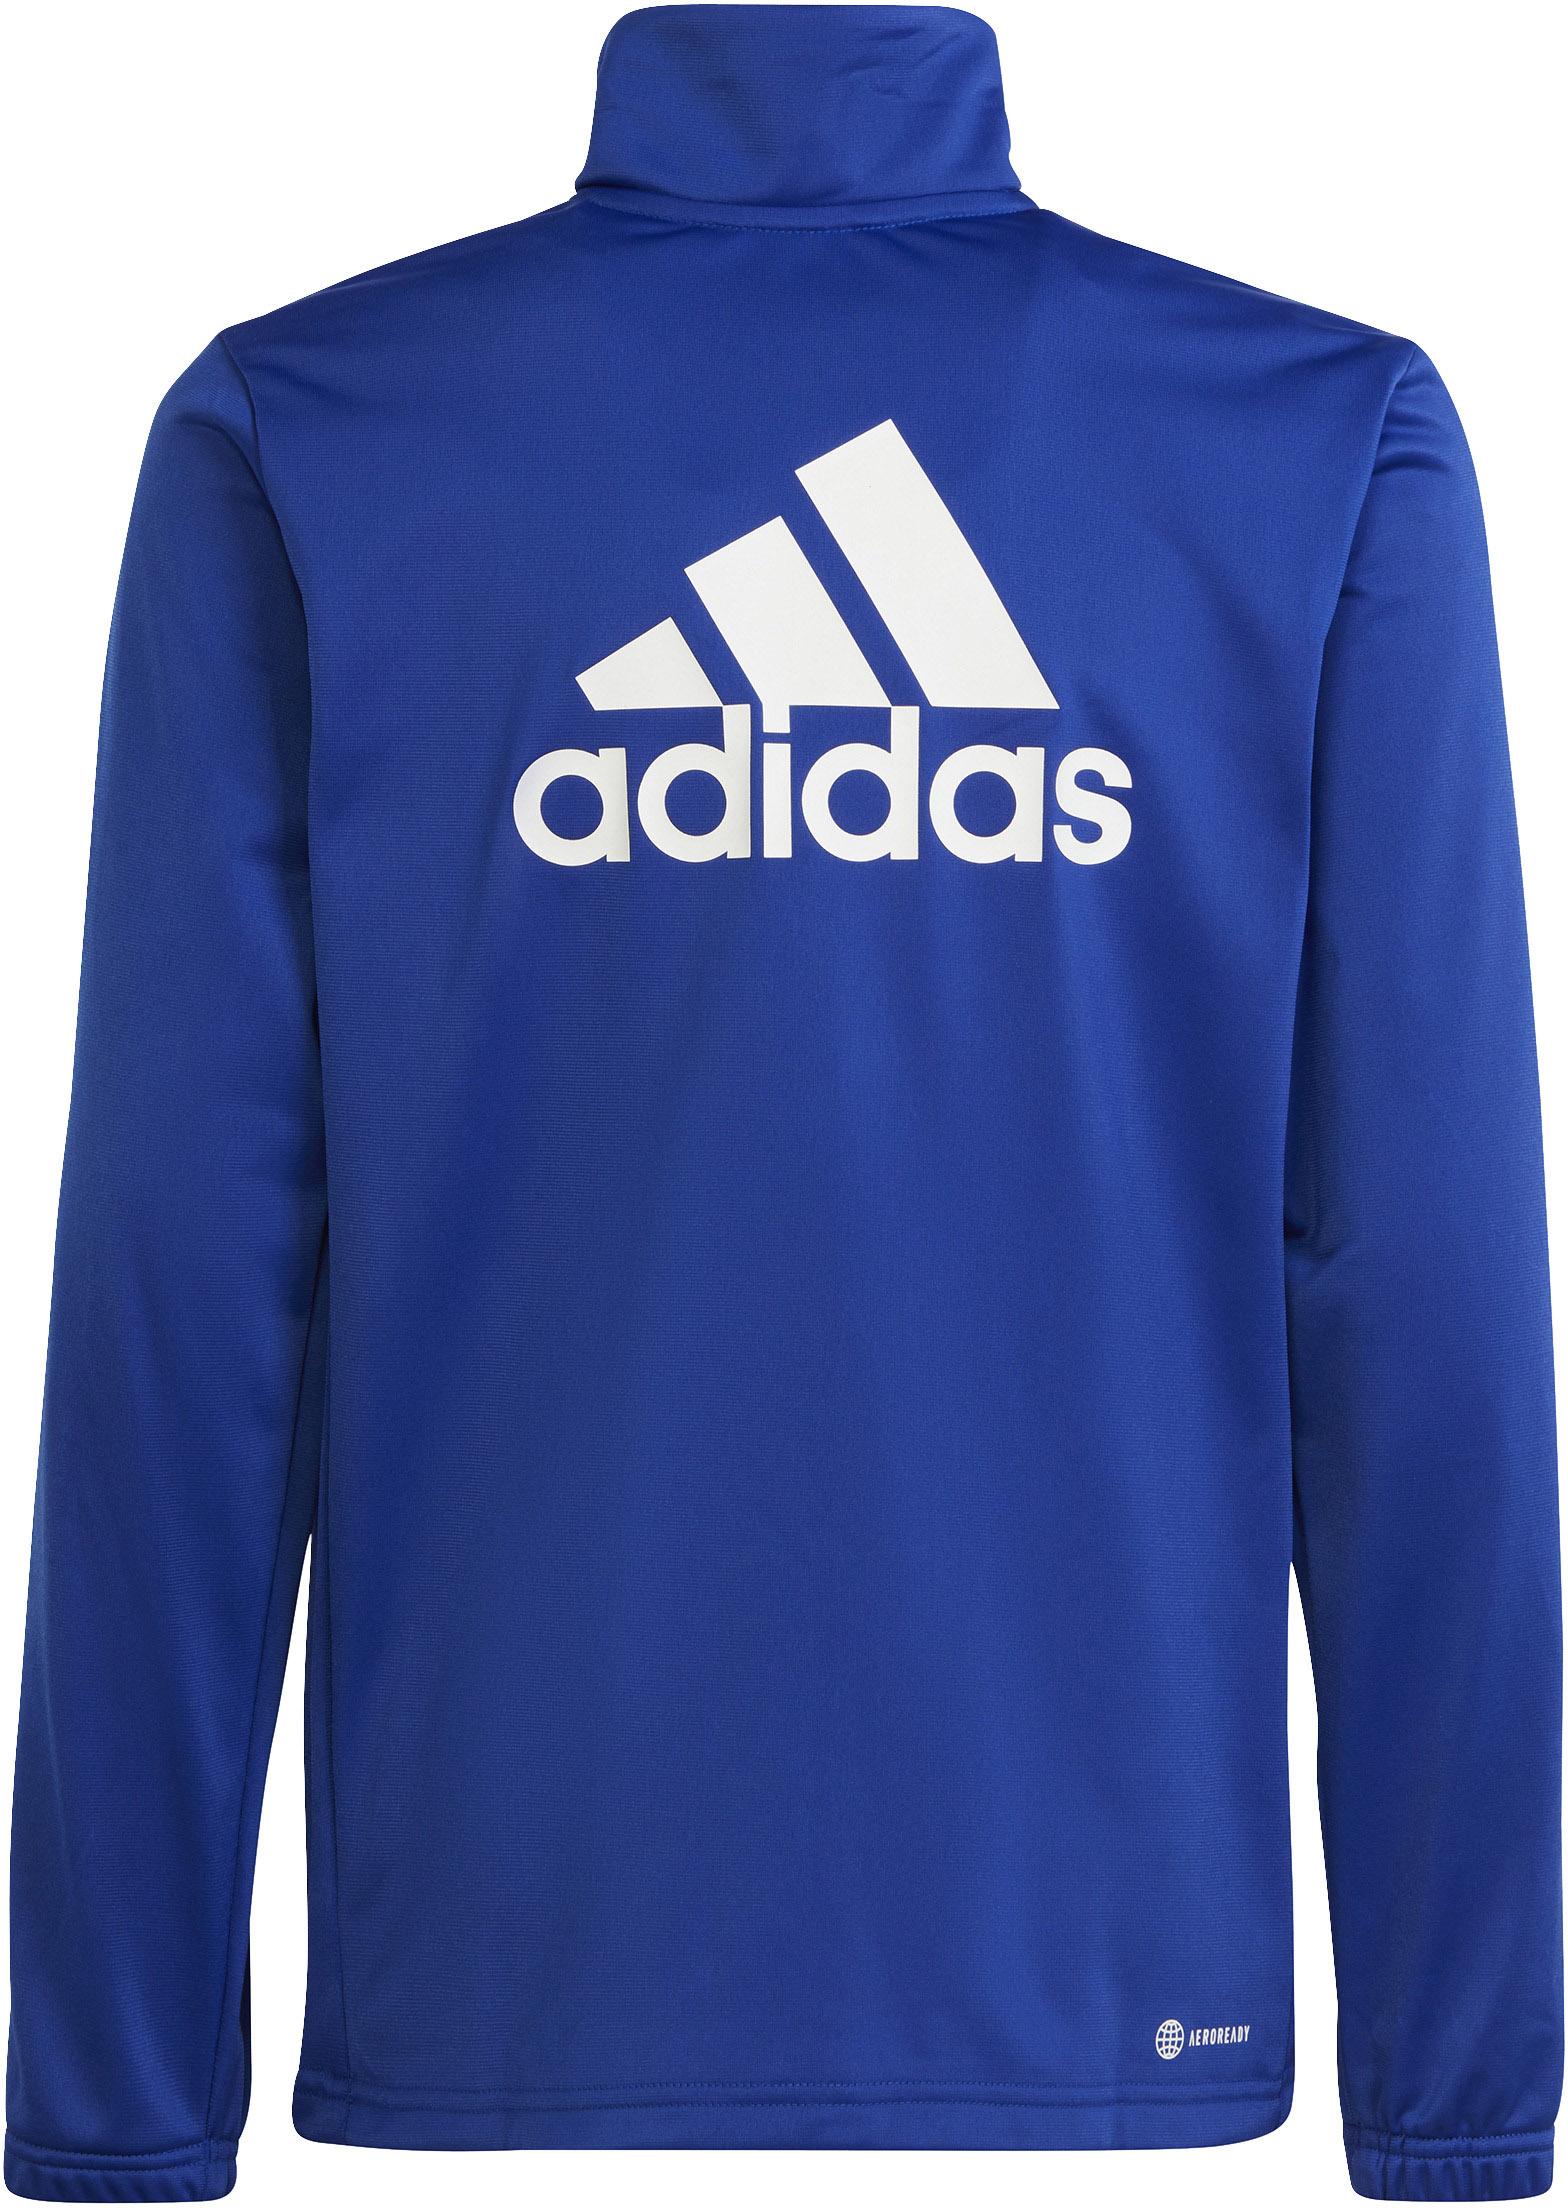 Adidas Trainingsanzug Jungen semi ink im blue-white-legend Online kaufen SportScheck Shop lucid von